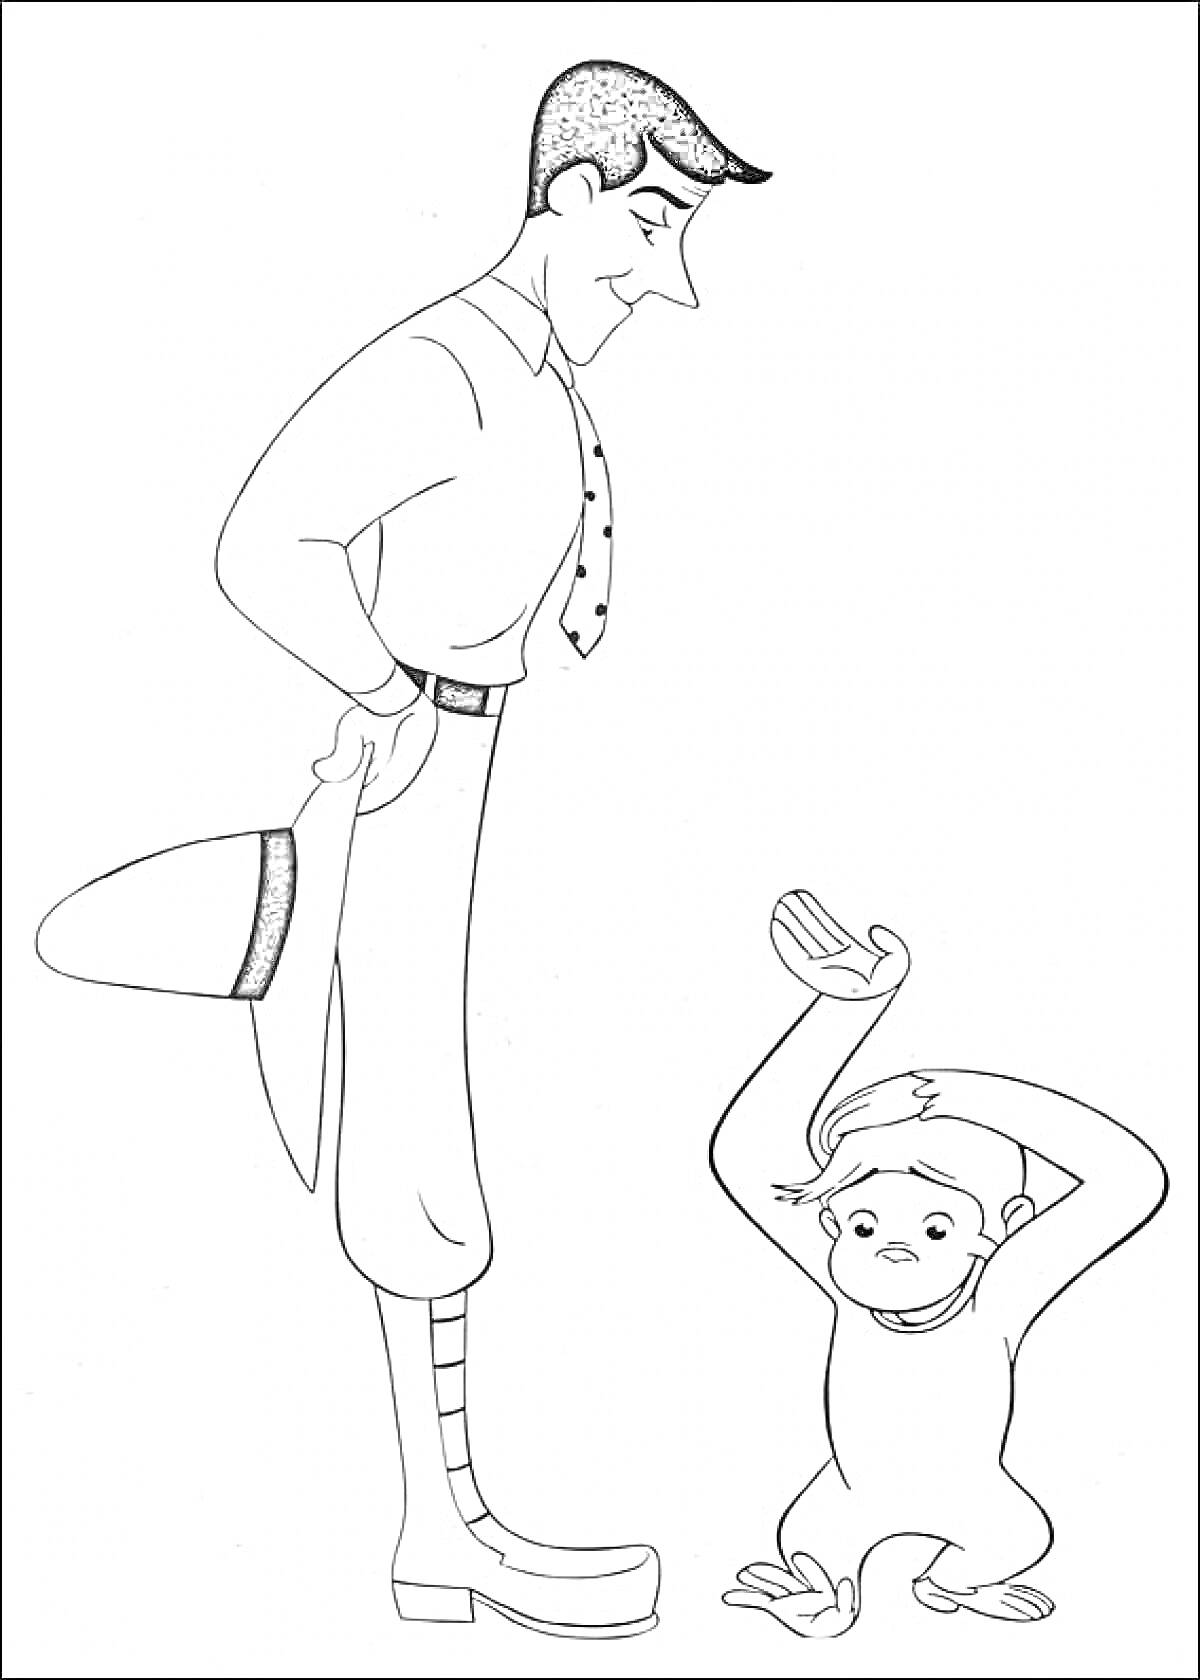 Раскраска Мужчина в шляпе и обезьянка с вытянутыми вверх руками